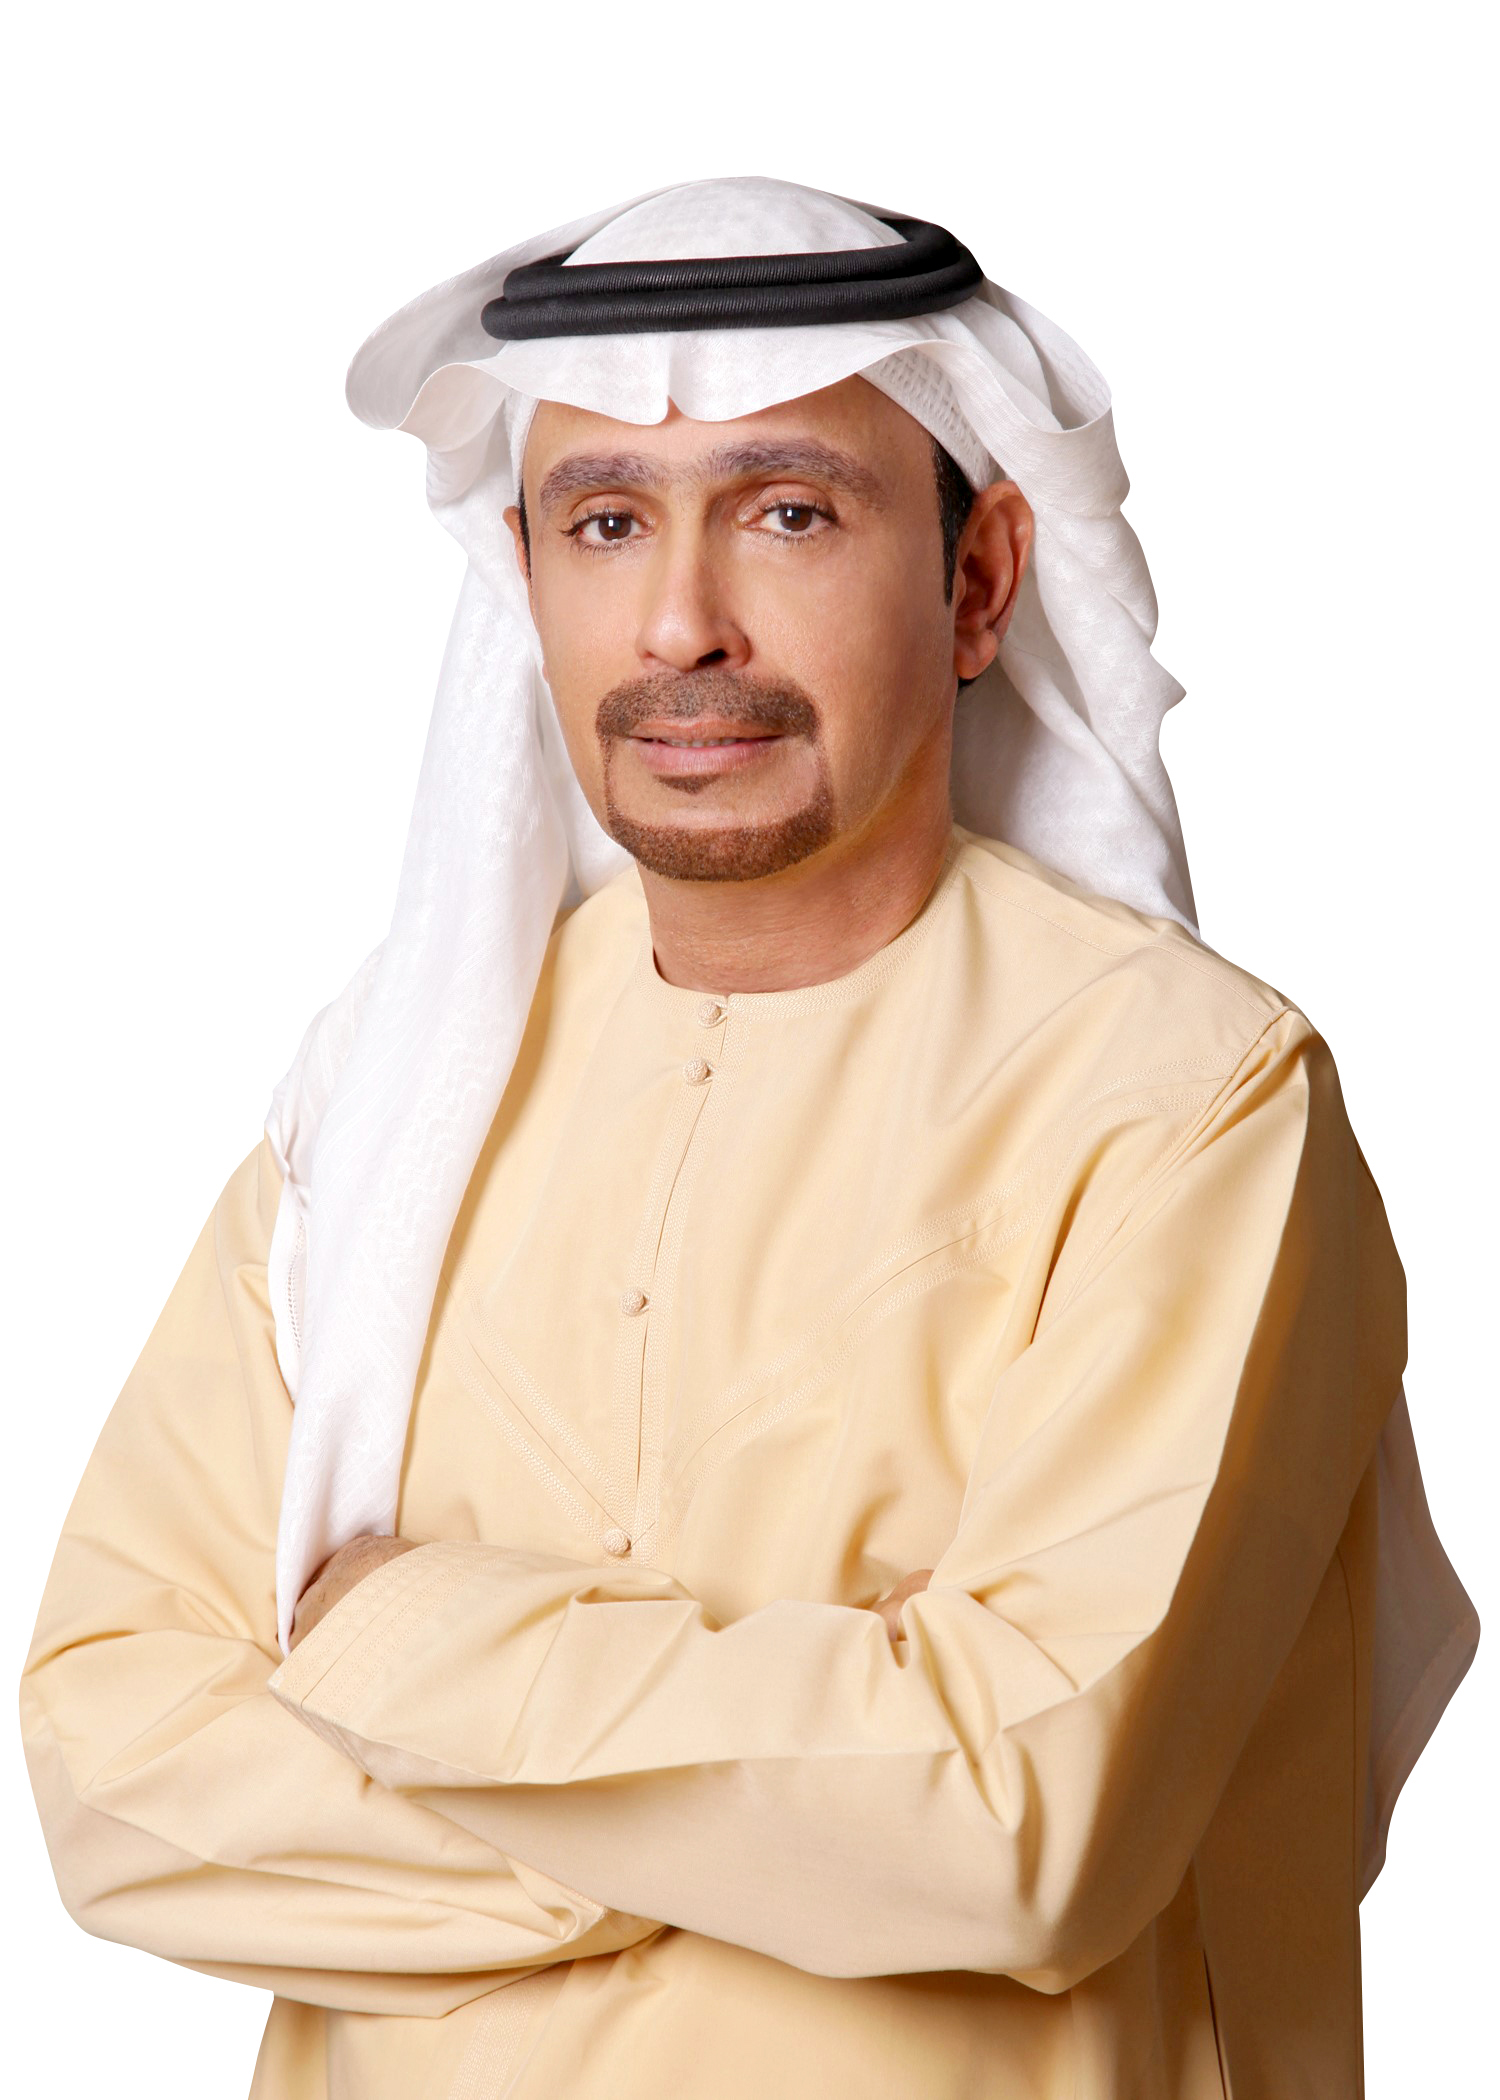 وكالة أنباء الإمارات - "تراخيص" تنفذ أكثر من 5300 حملة تفتيش خلال النصف الأول من 2021 - اخبار الامارات ENN